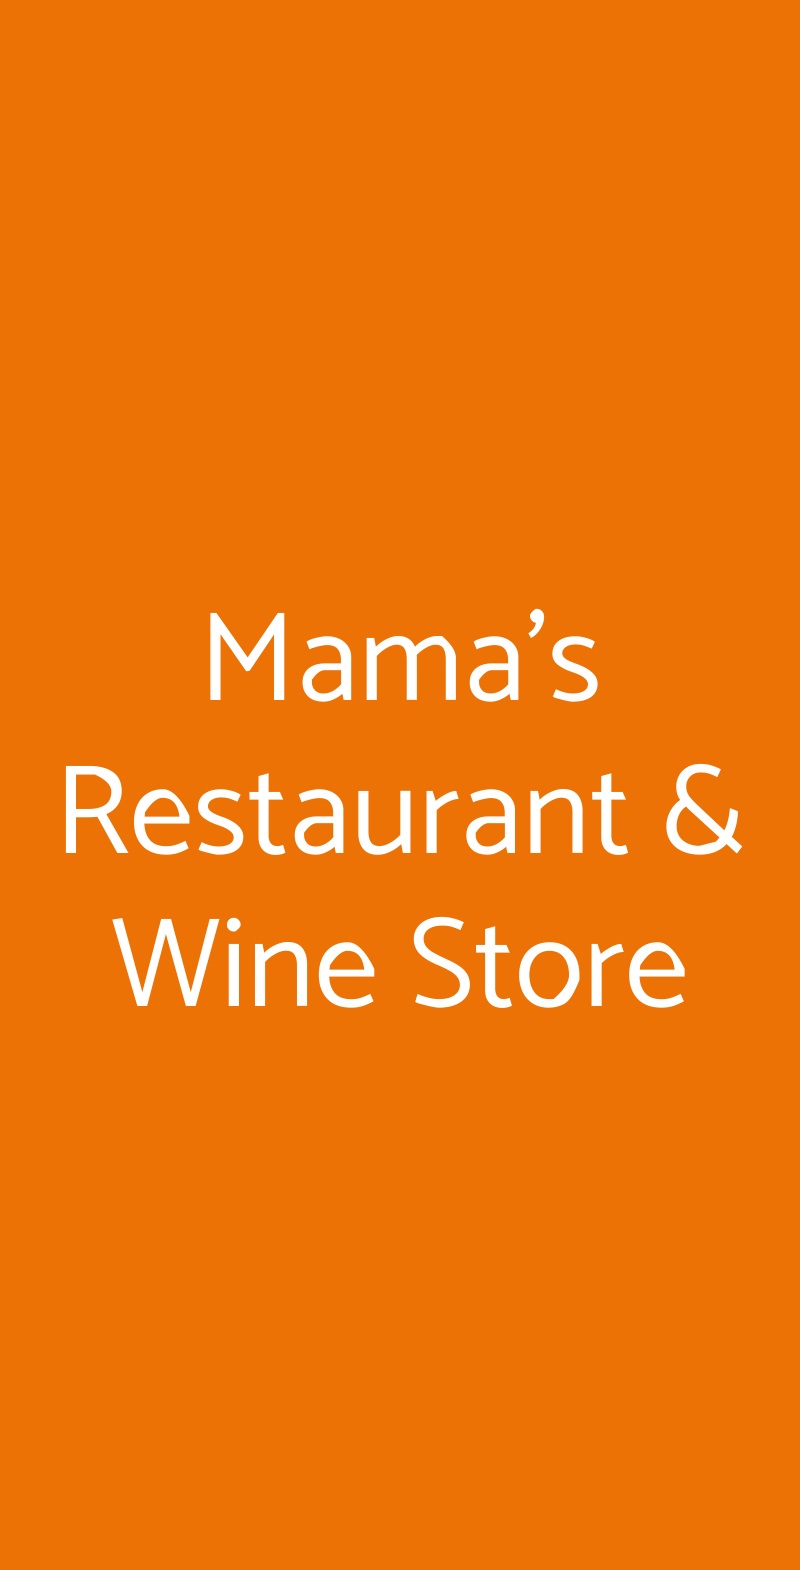 Mama's Restaurant & Wine Store Feriolo di Baveno menù 1 pagina